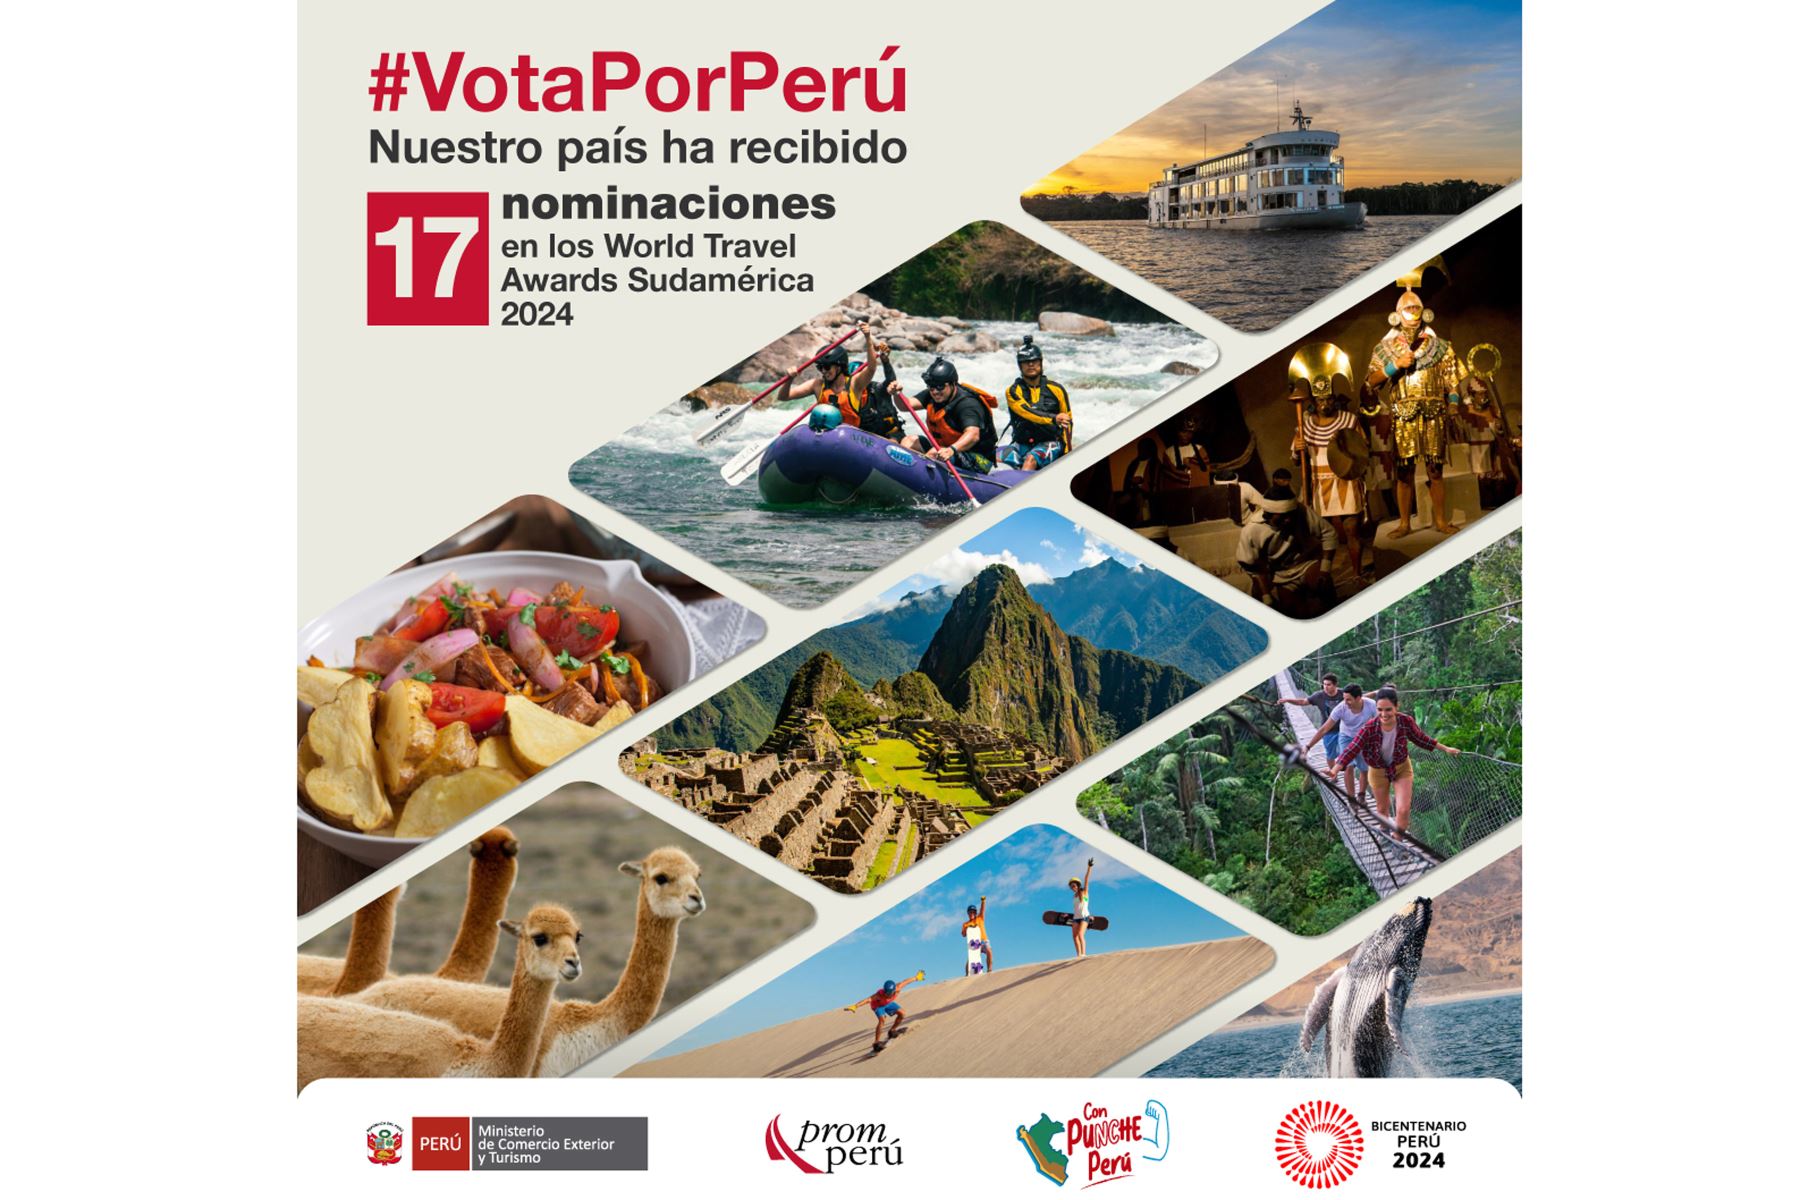 Óscar del Turismo el Perú recibe 17 nominaciones en los World Travel